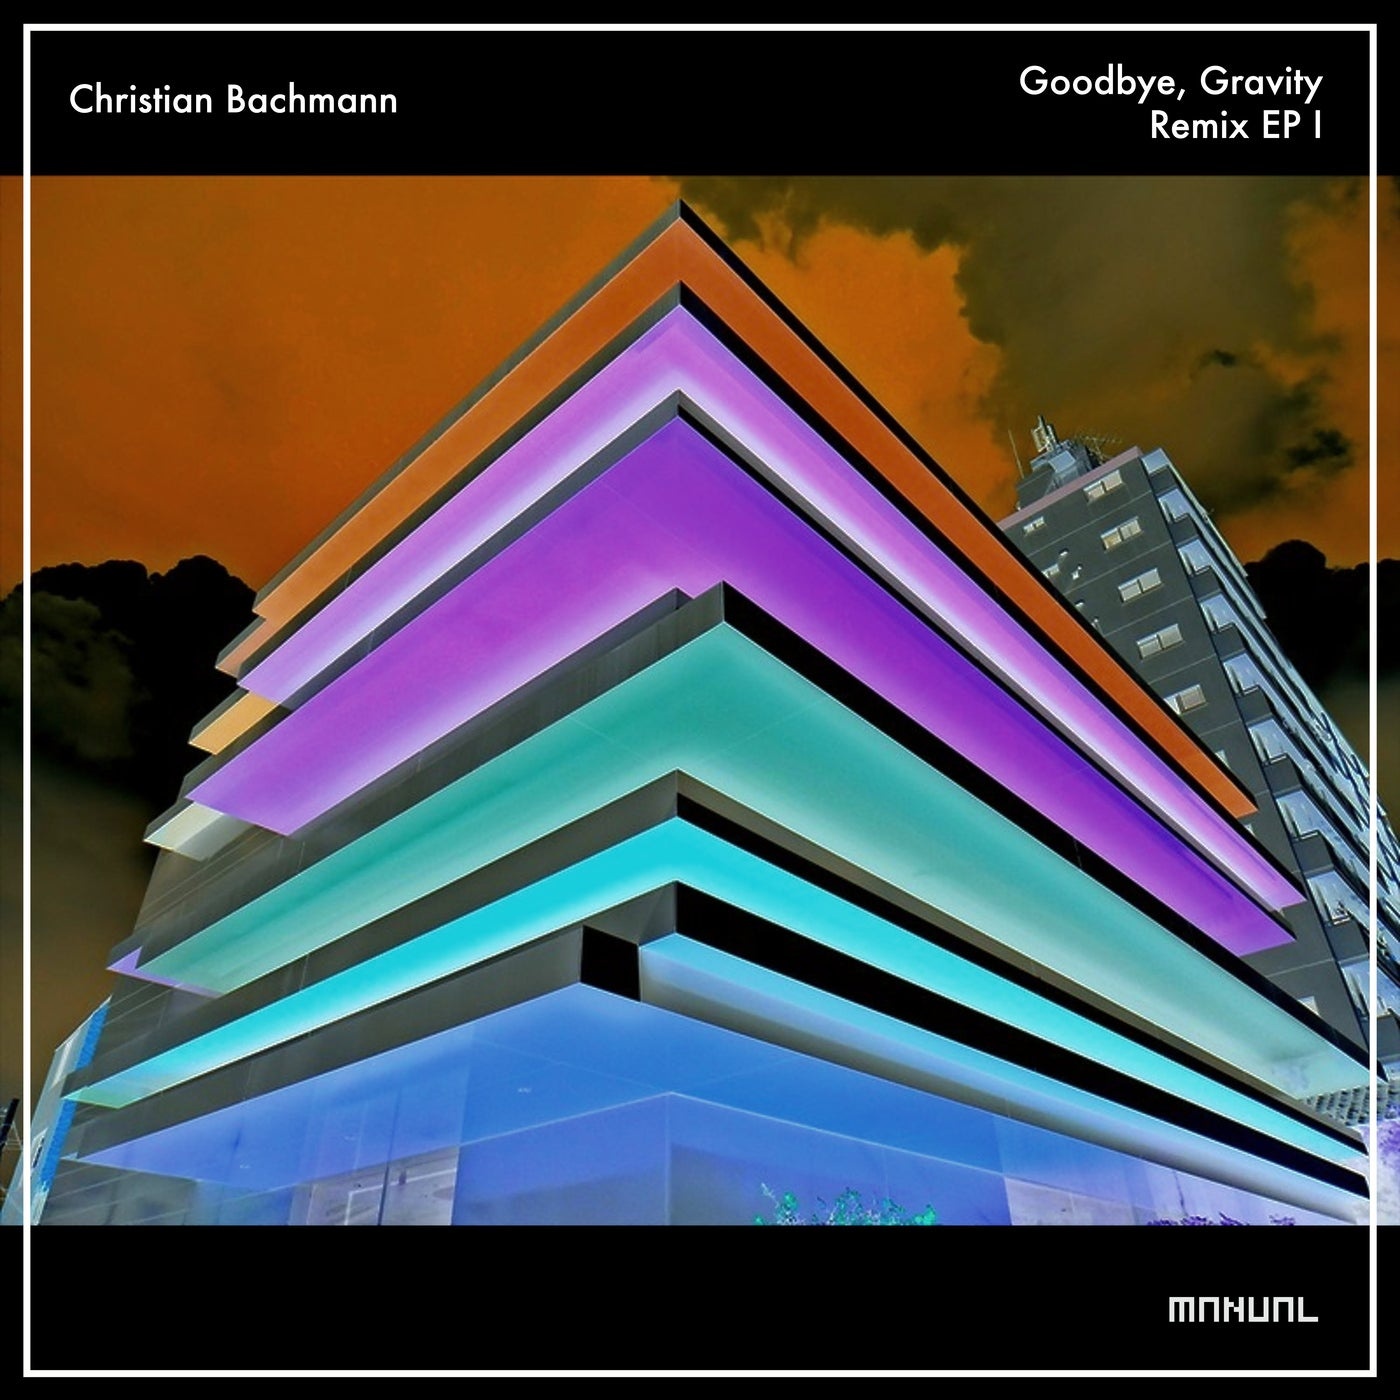 Christian Bachmann - Goodbye, Gravity - Remix EP 1 [MAN339]